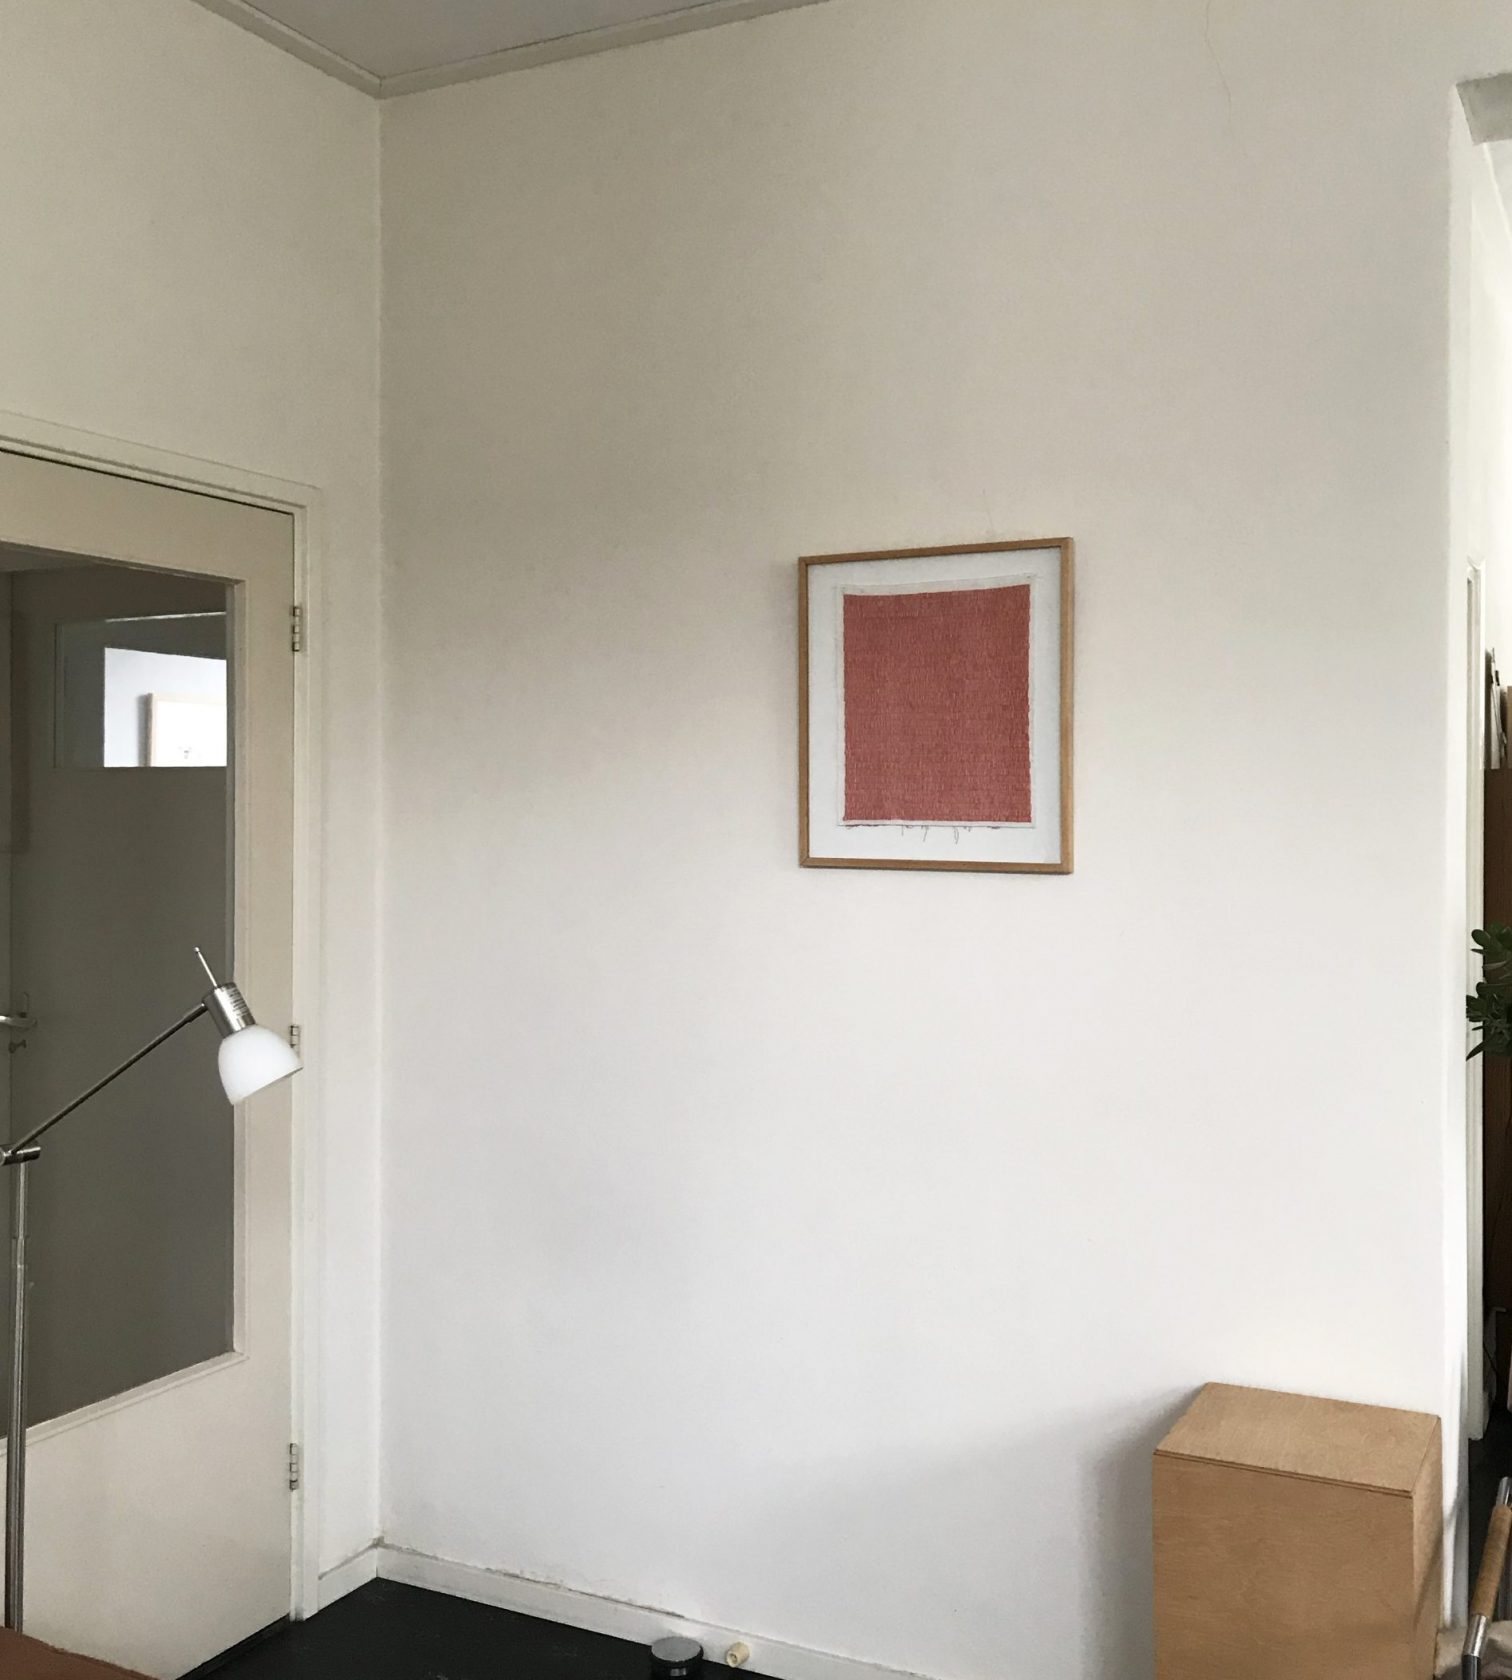 Kunstwerken in het huis van curator Johan van der Veen